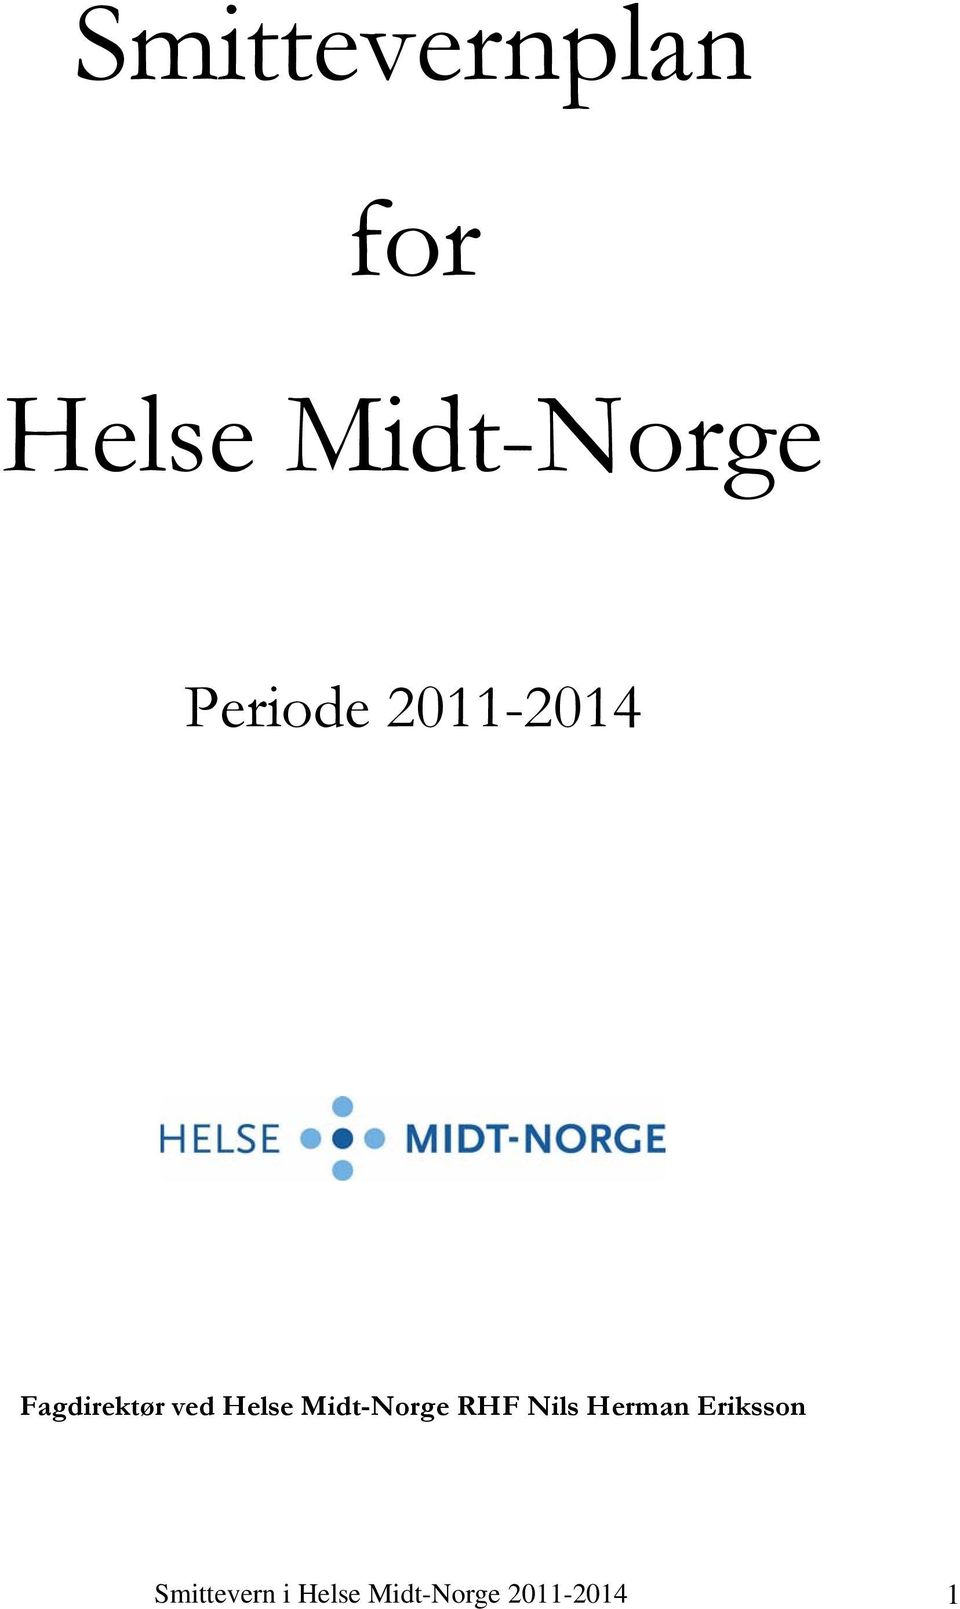 Helse Midt-Norge RHF Nils Herman